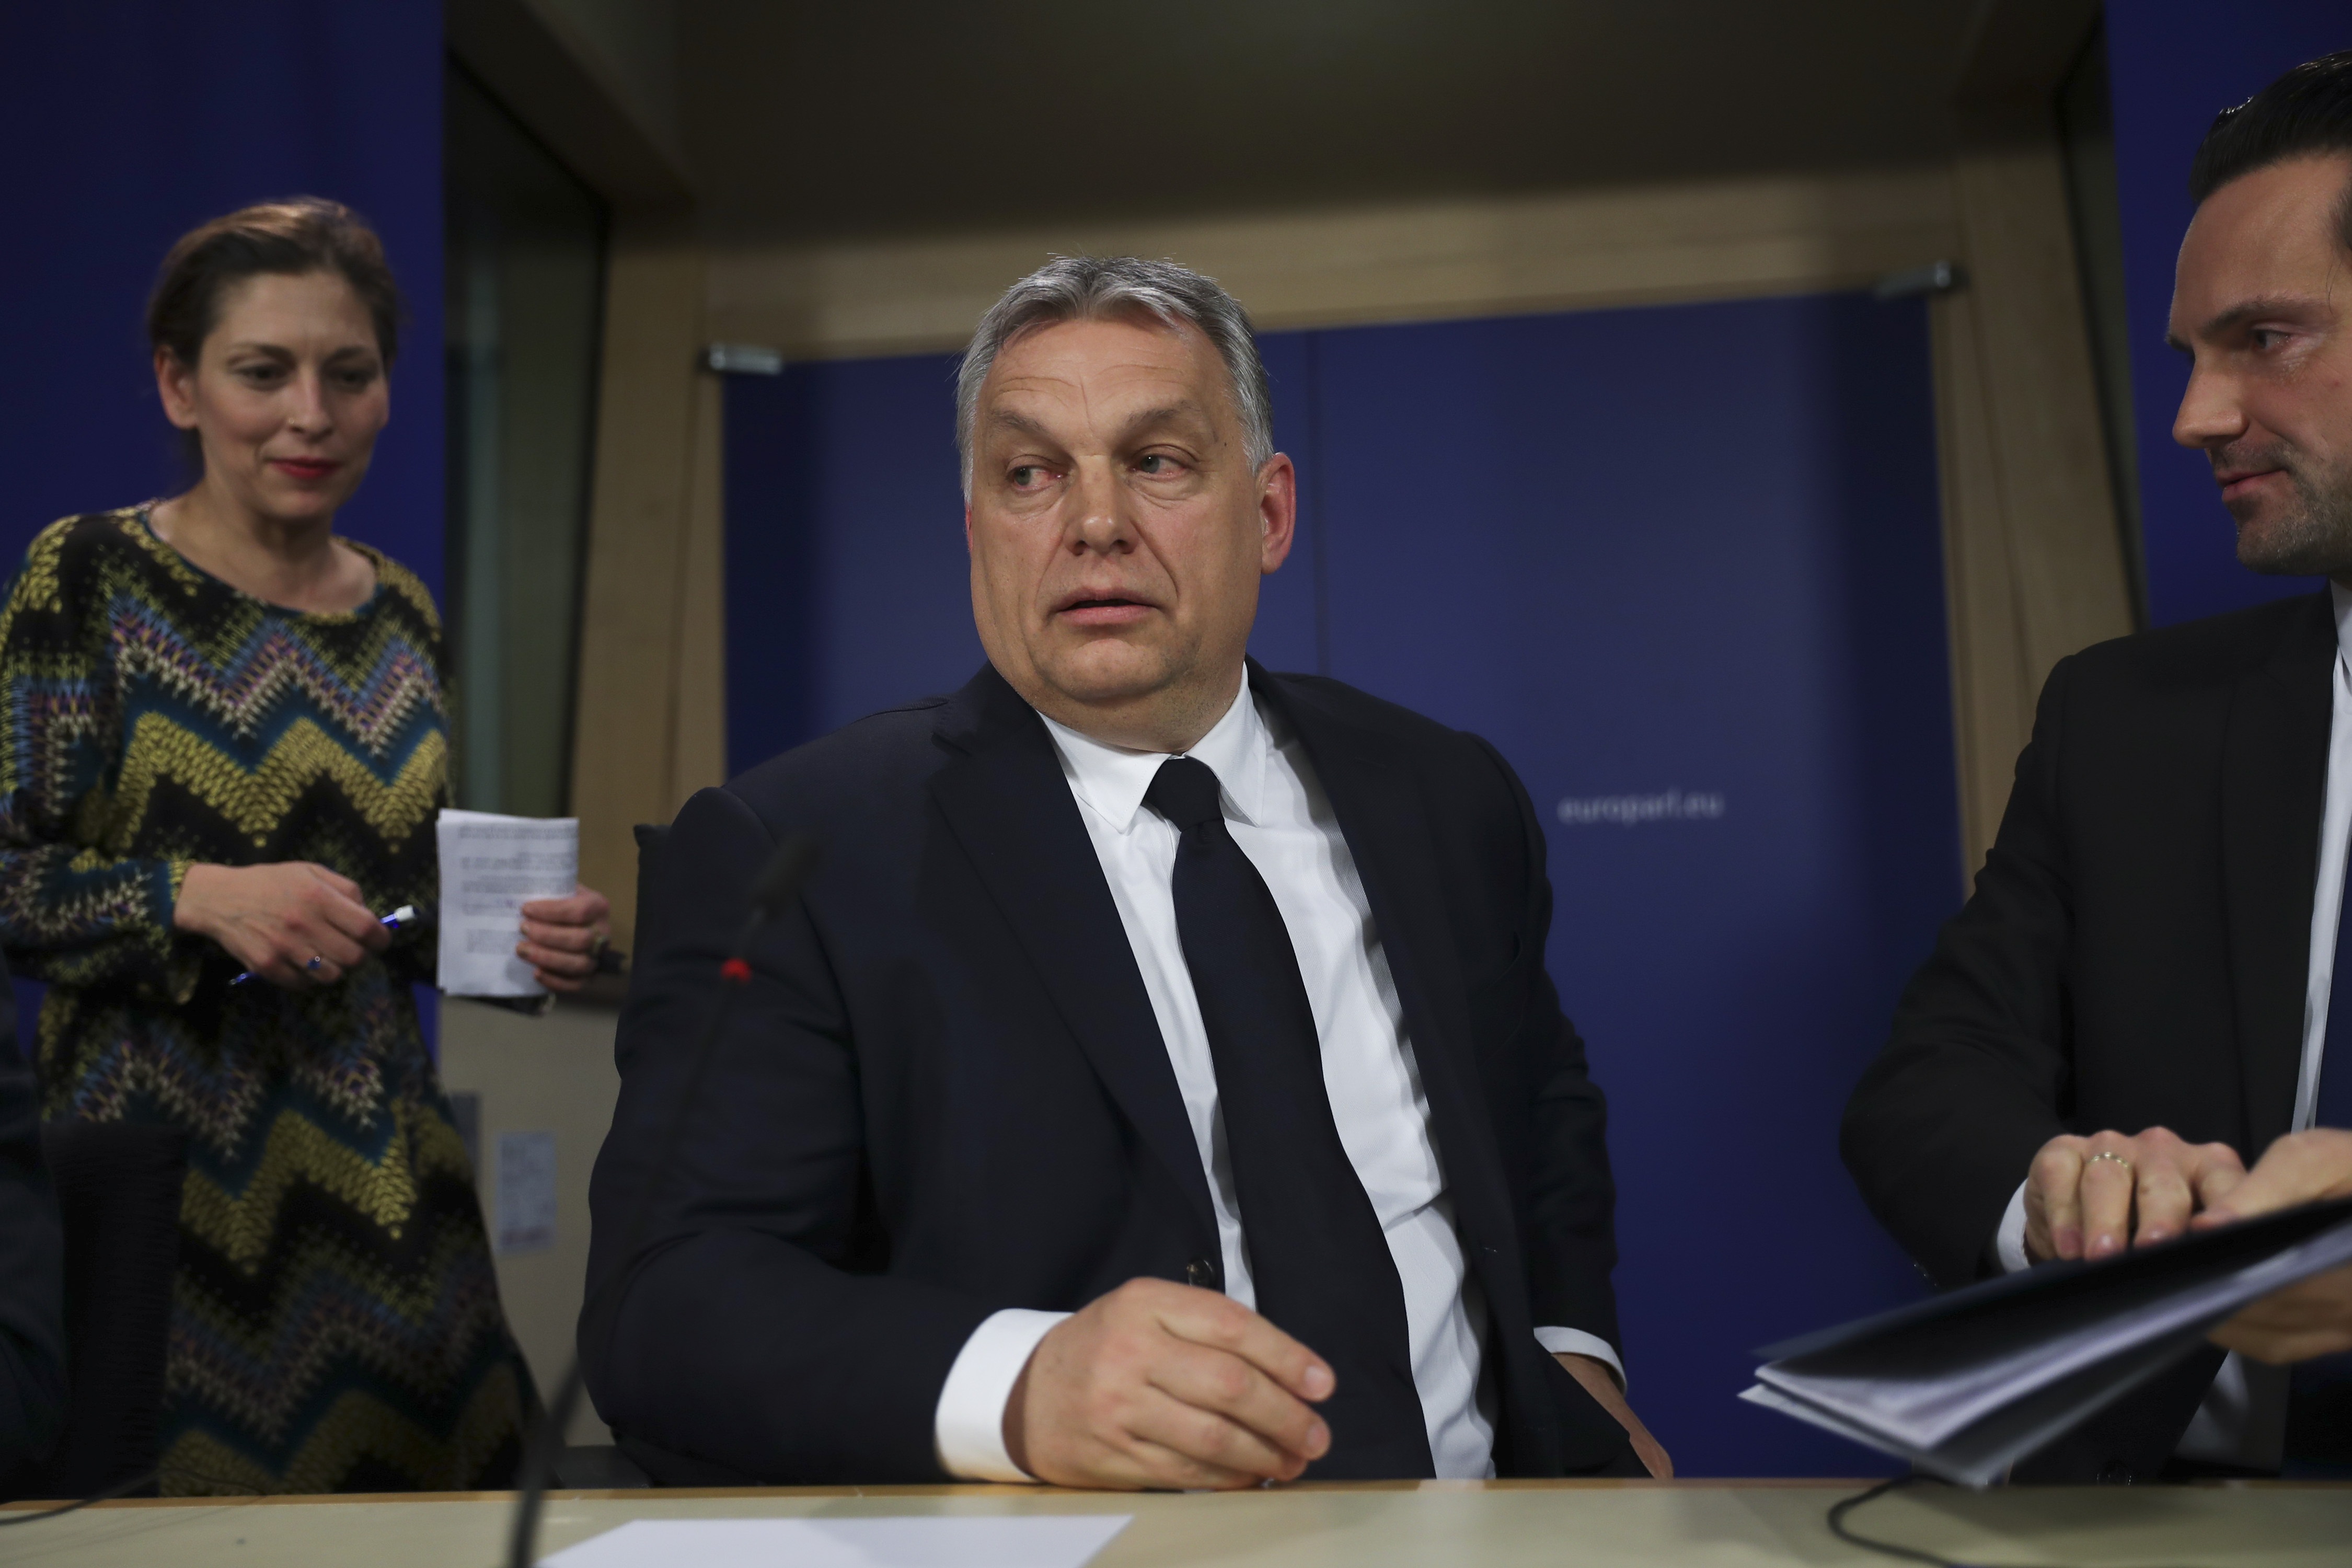 Sterke reaksjoner på Orbáns rase-tale - men mange ser ham som en tøffing